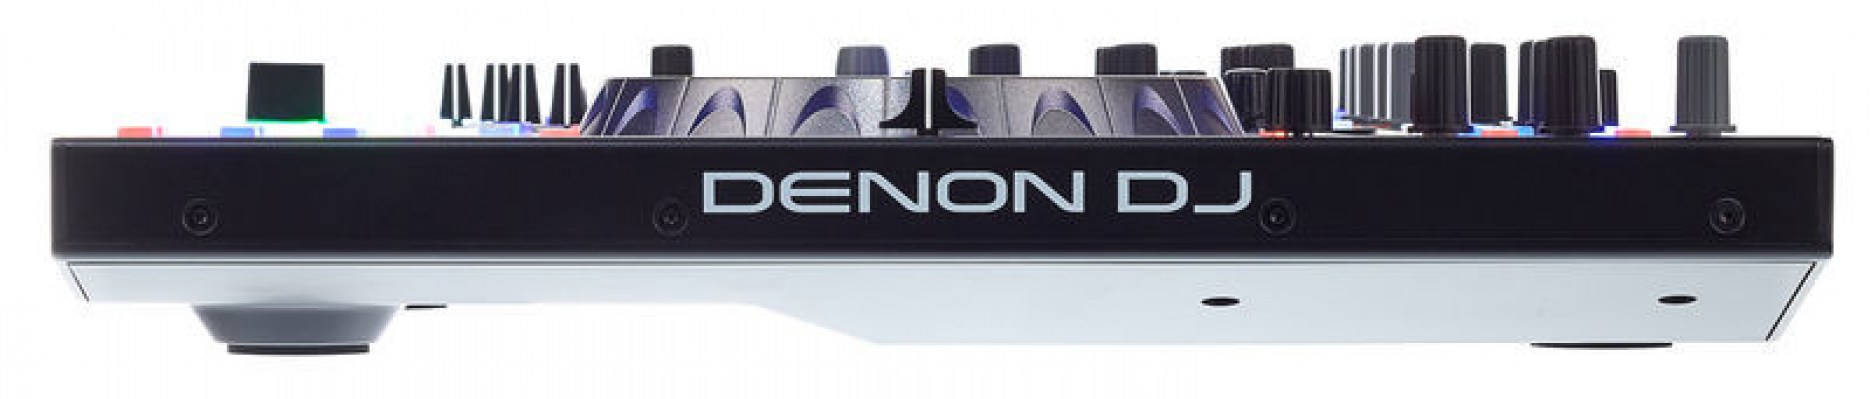 Denon MC7000